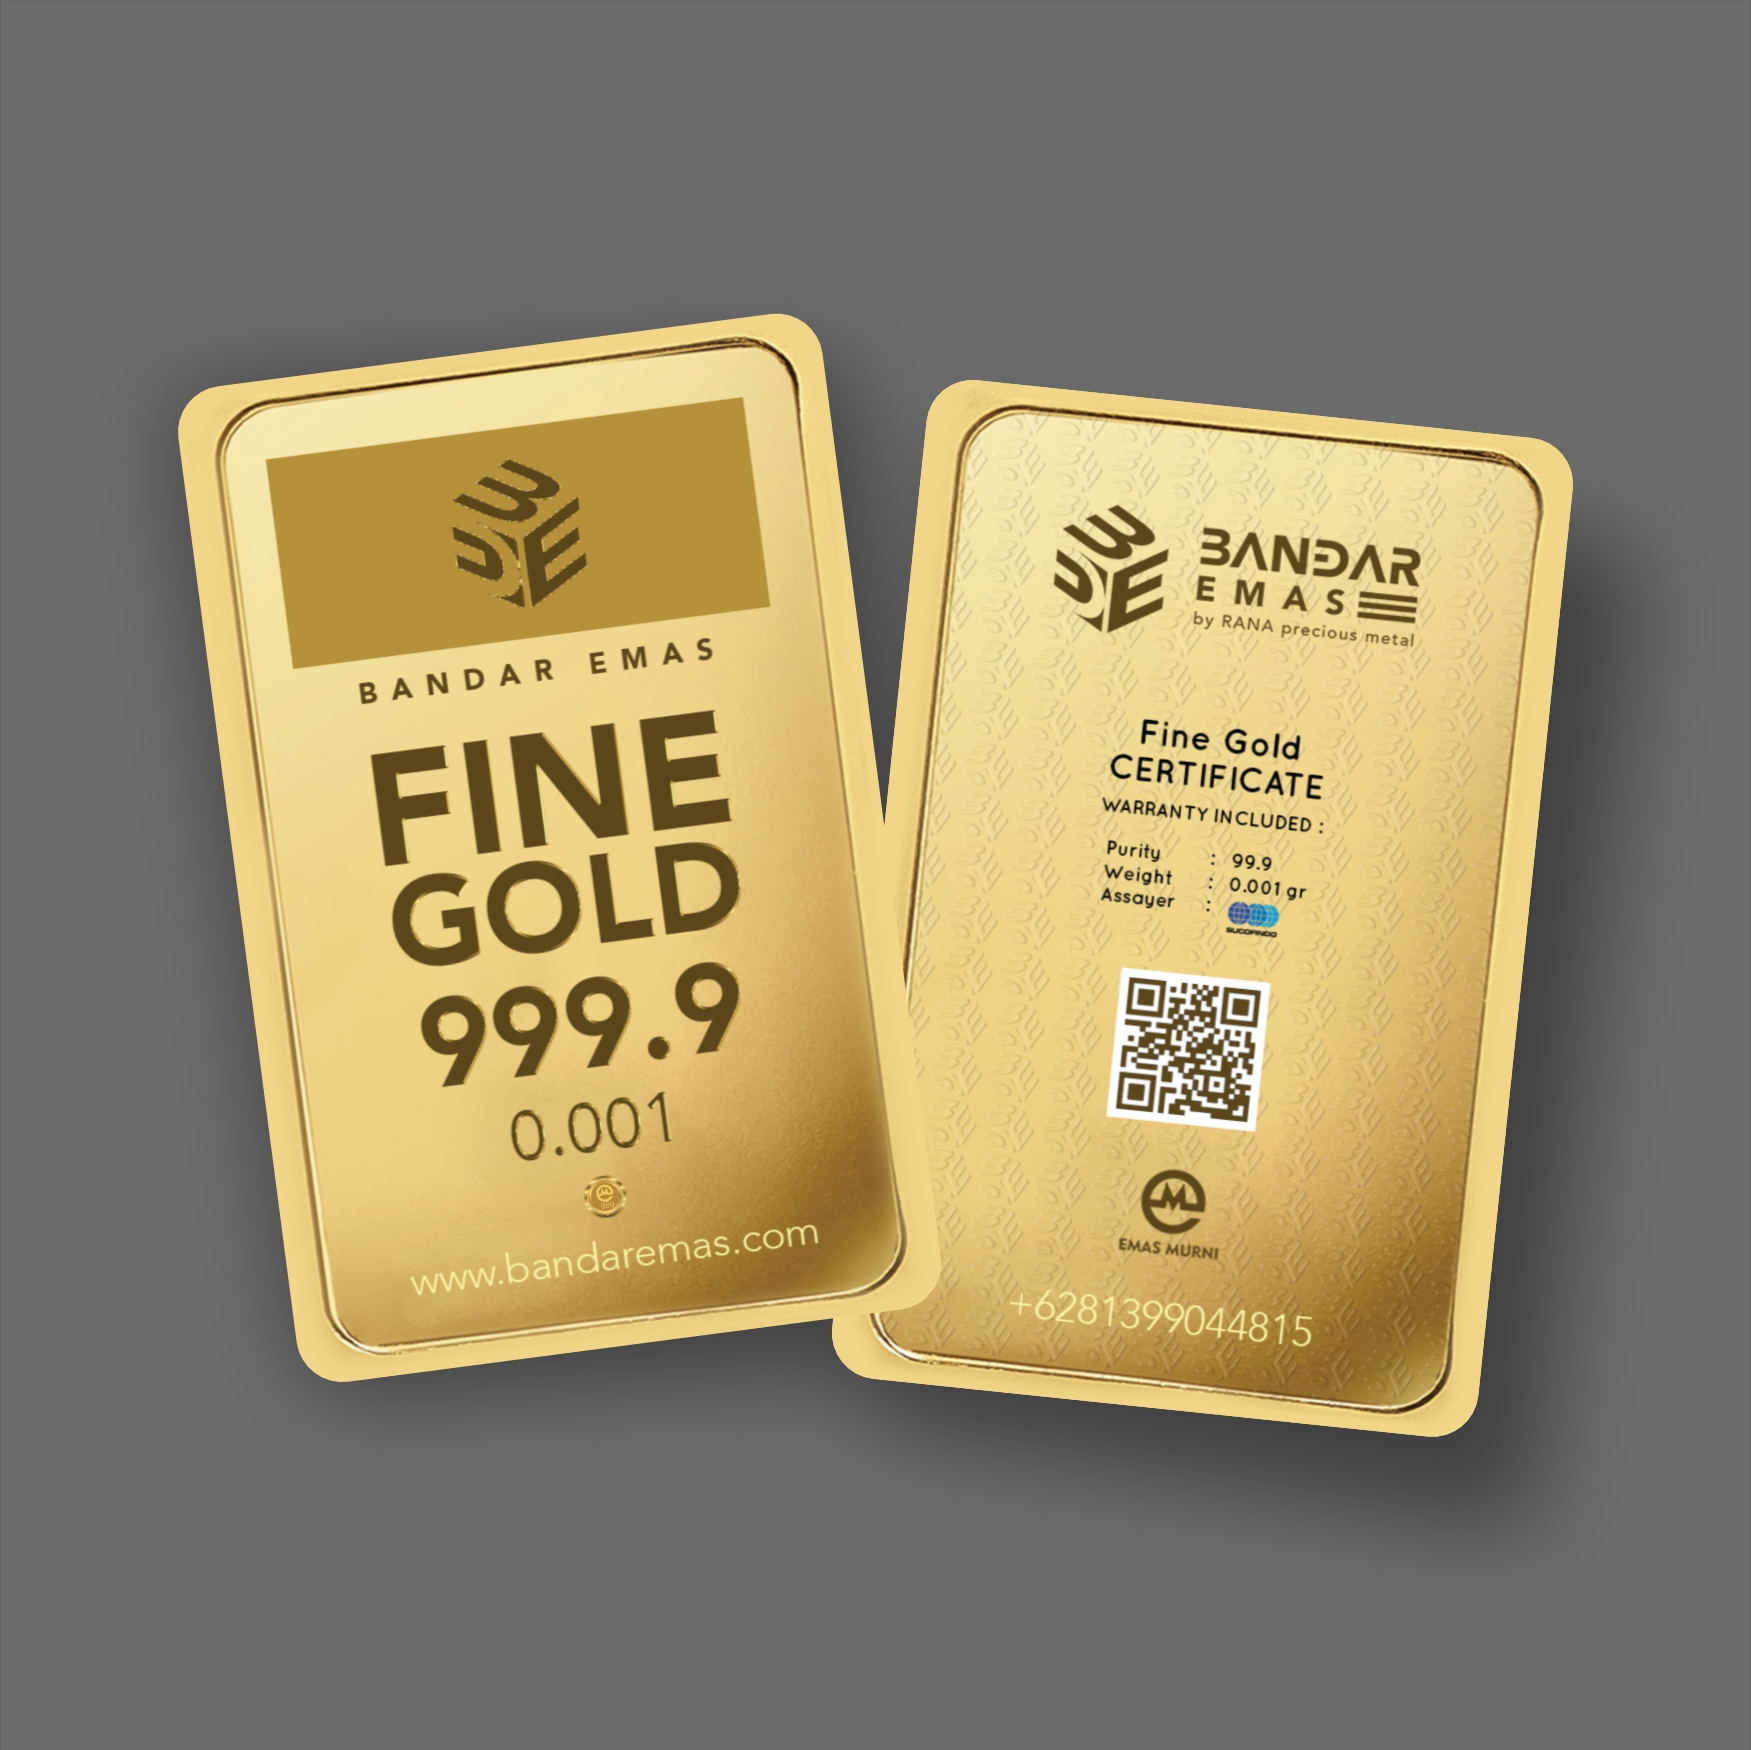 Fine Gold Bandar Emas 0.001